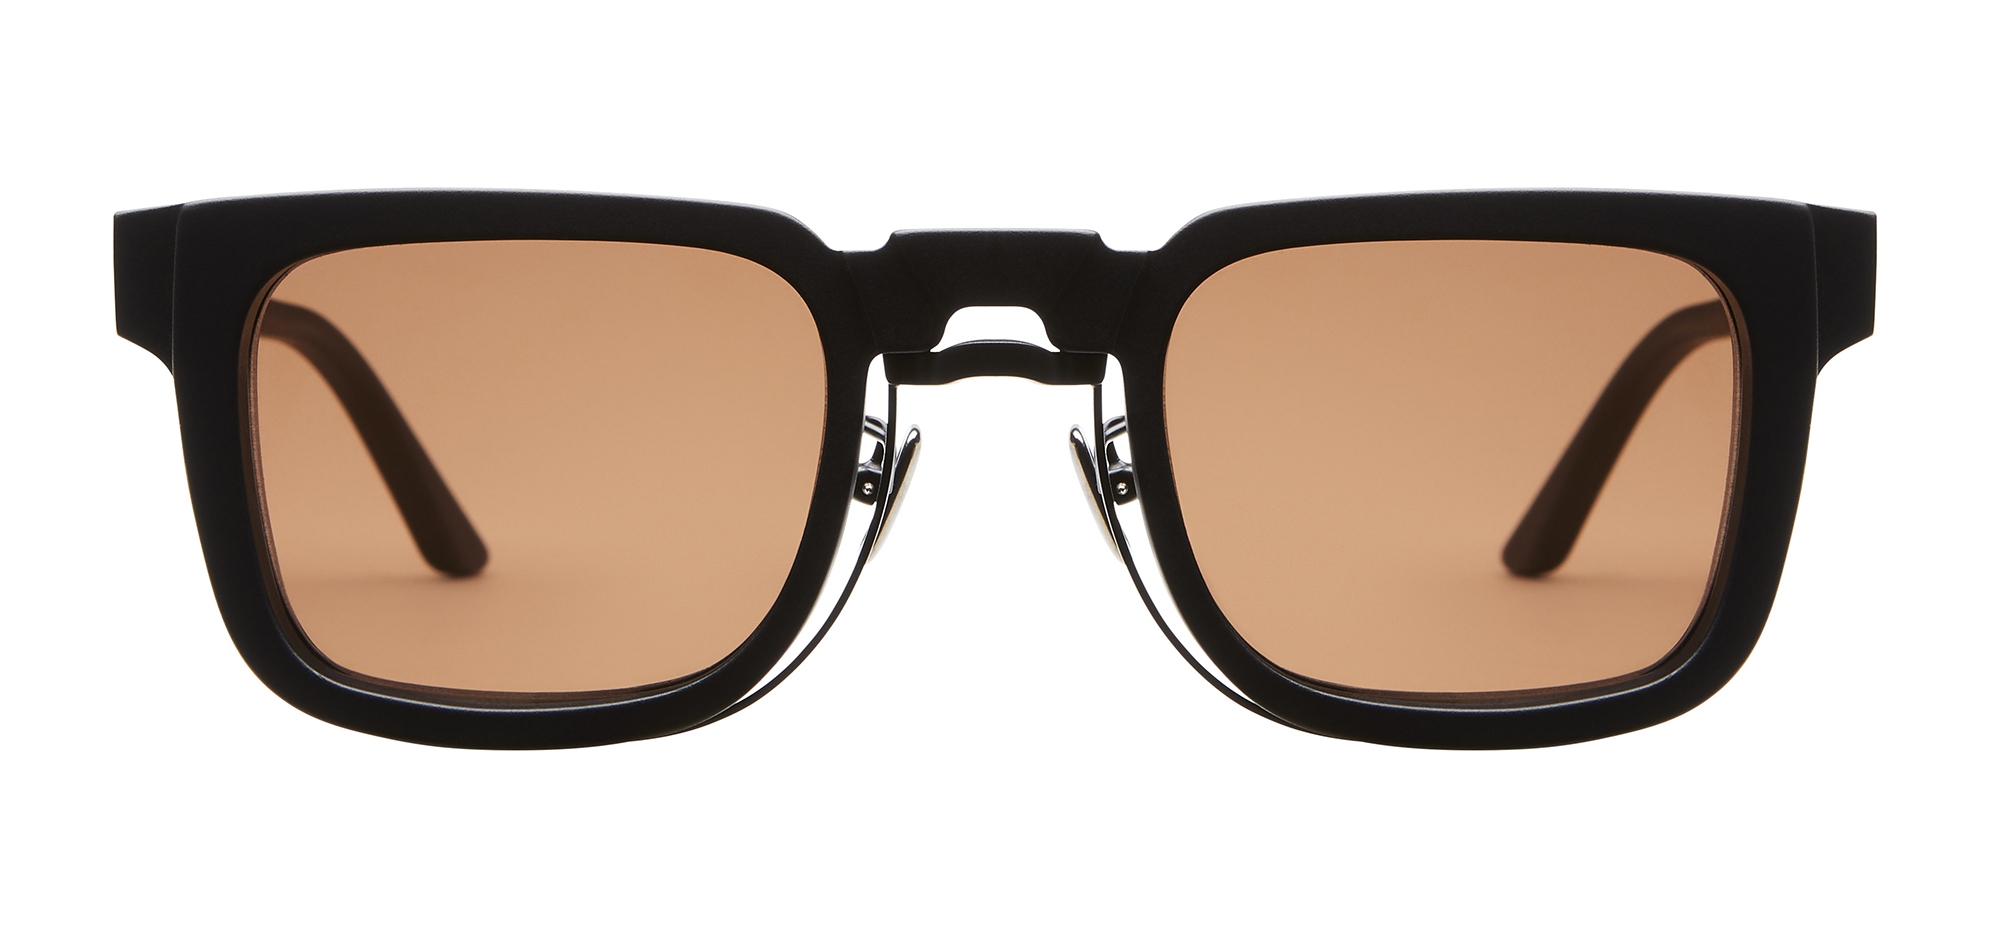 Kuboraum - Mask N4 - Black Matt - N4 BK - Sunglasses - Kuboraum